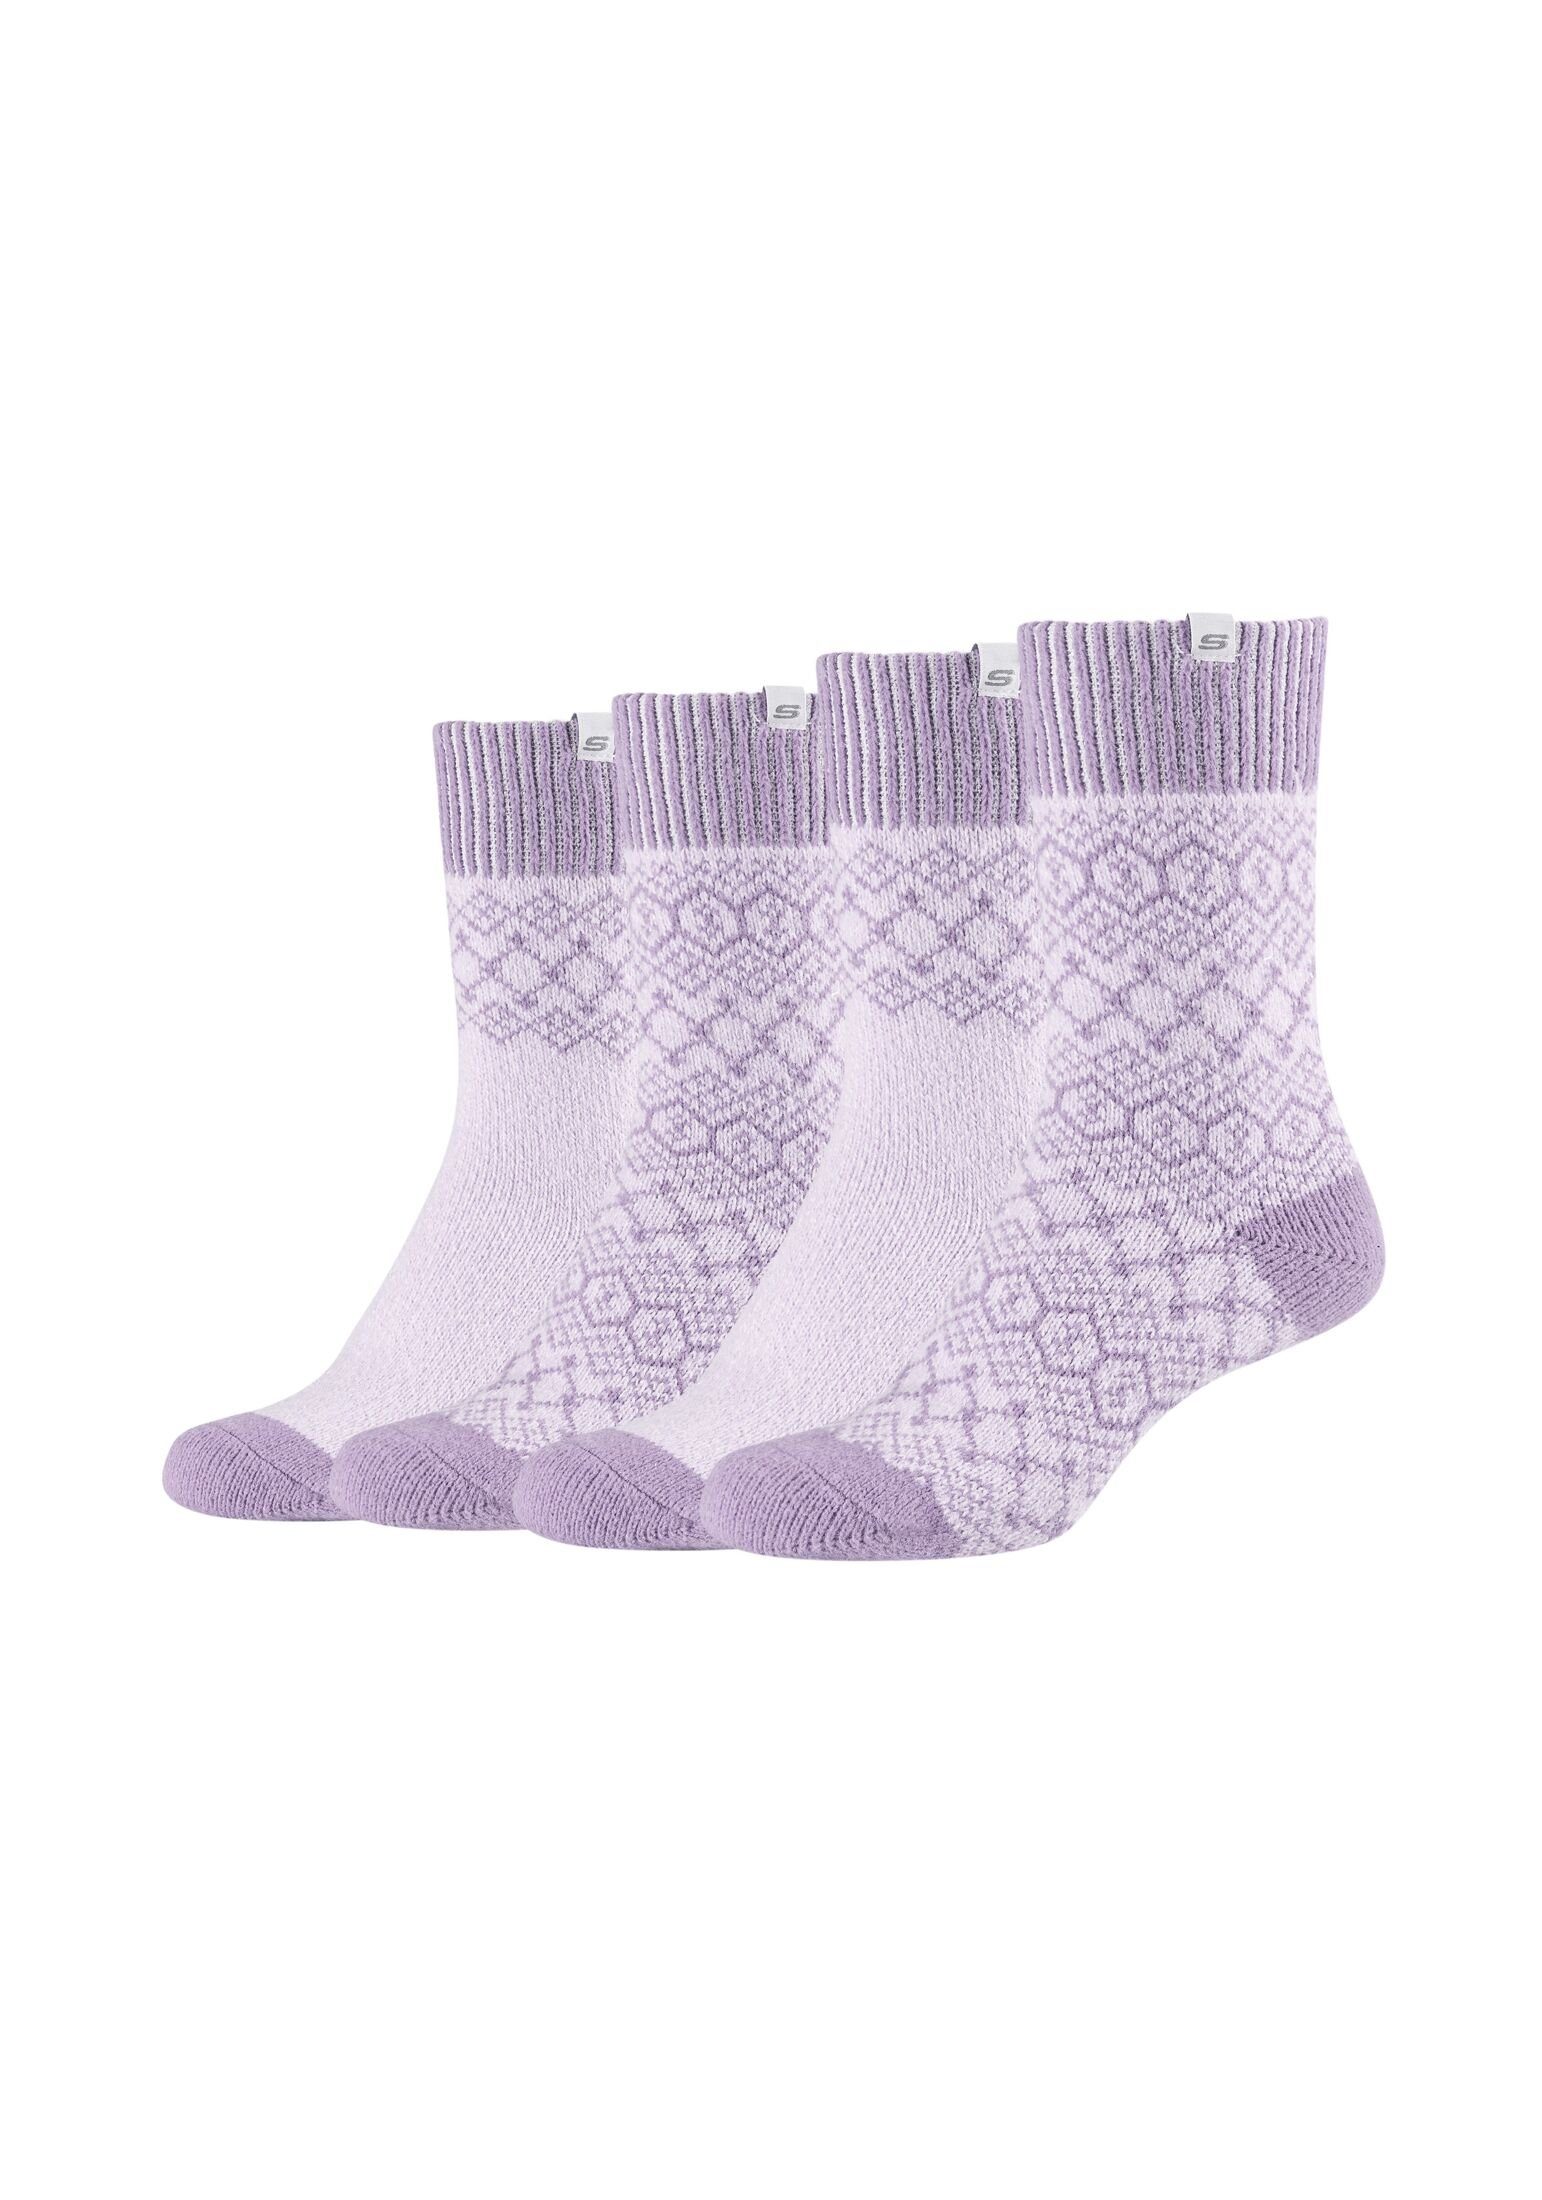 Lila Socken online kaufen | OTTO